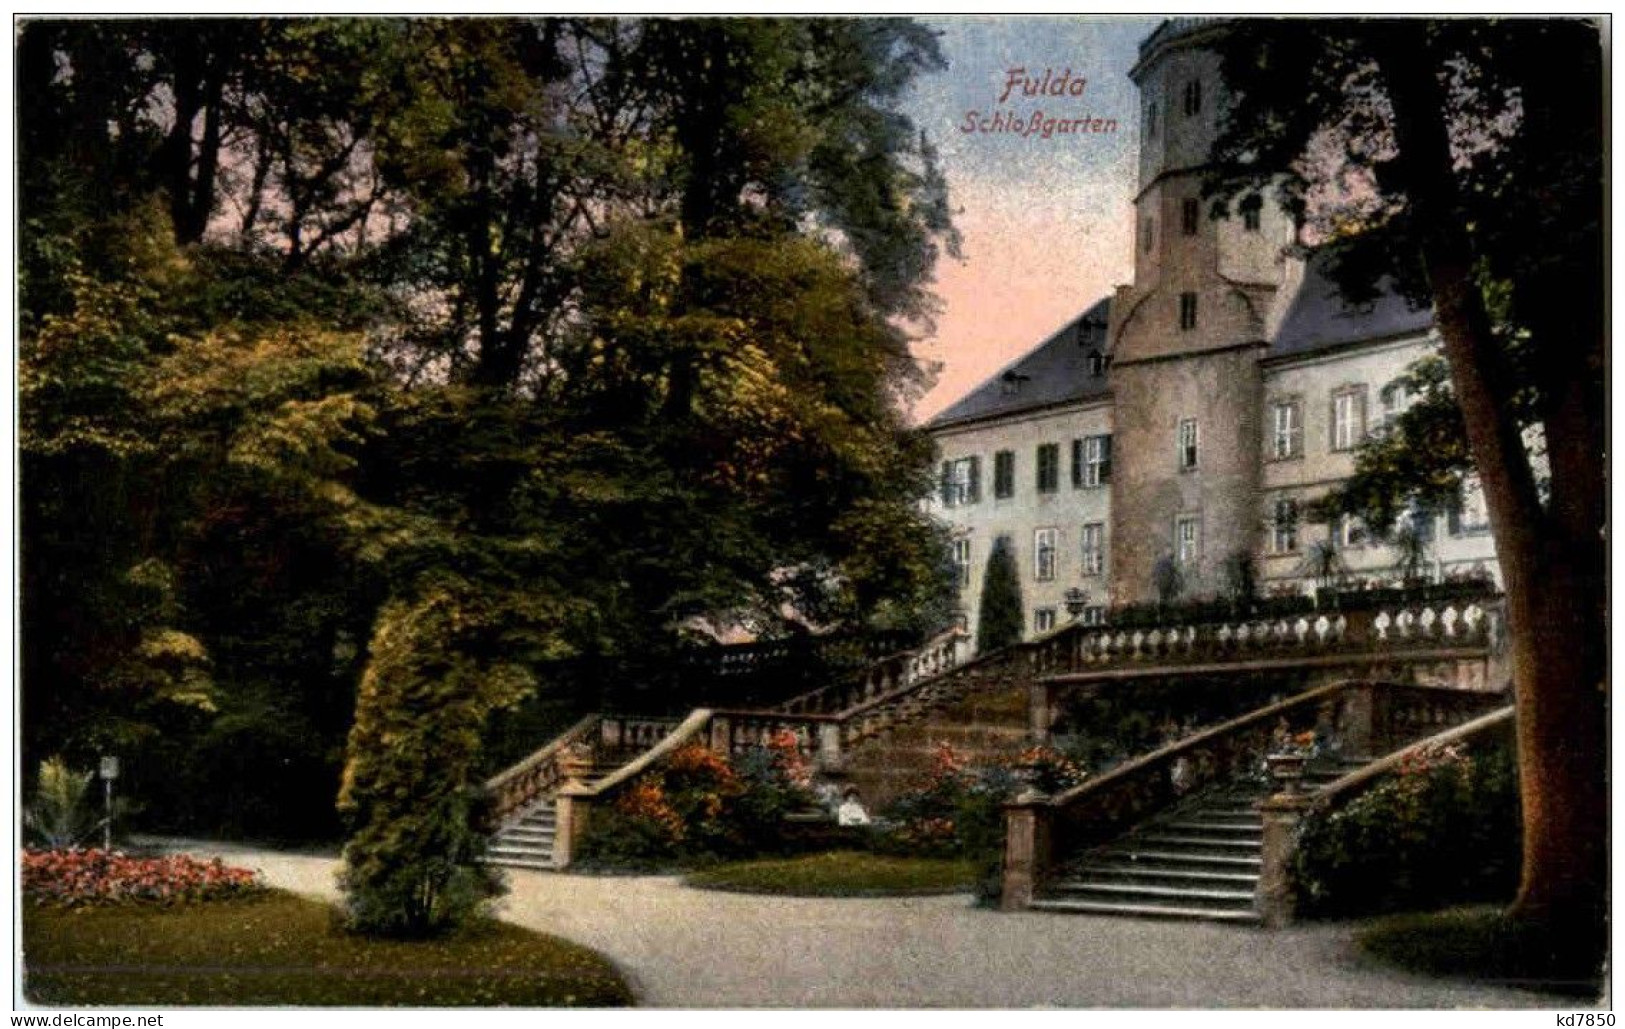 Fulda - Schlossgarten - Fulda